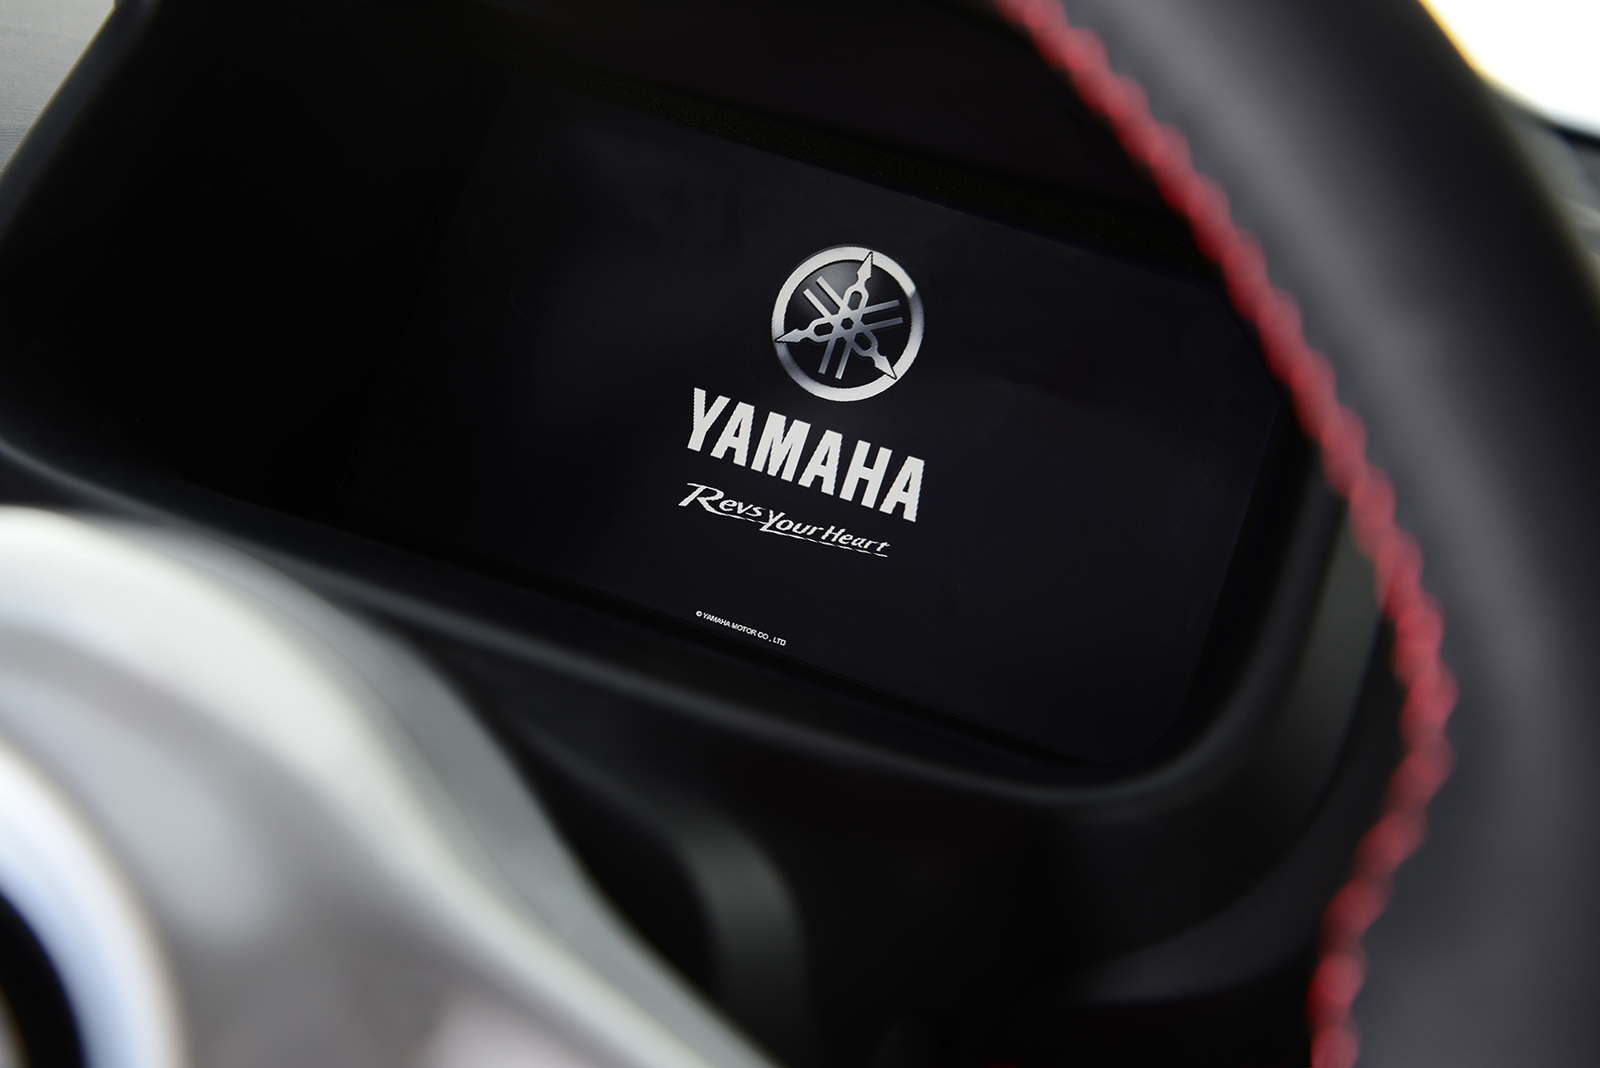 Yamaha Motiv